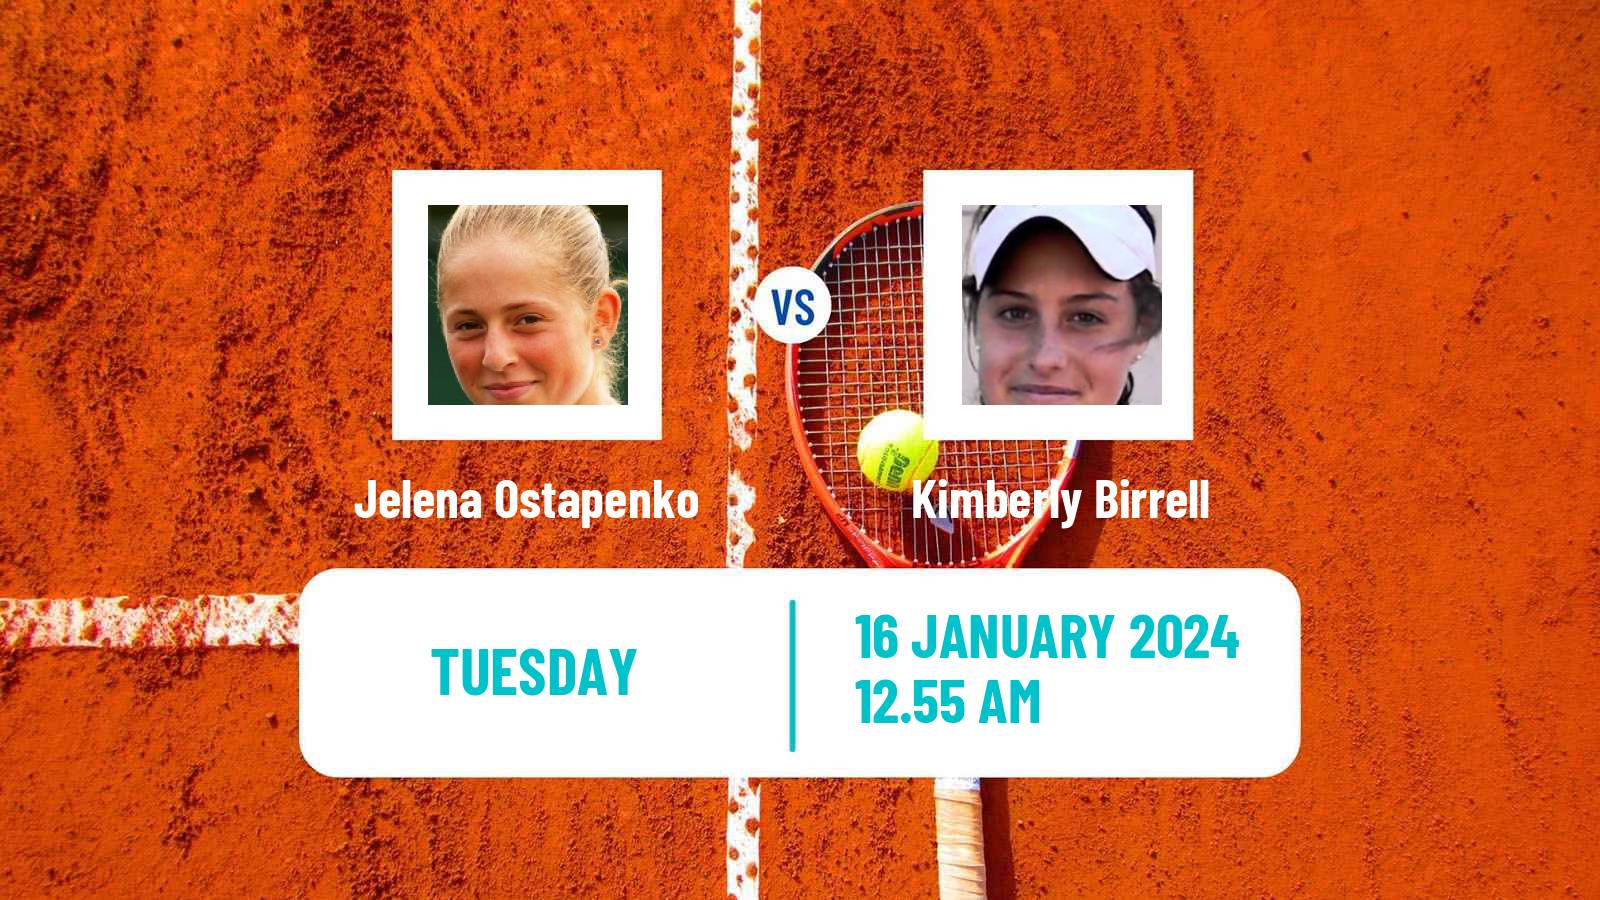 Tennis WTA Australian Open Jelena Ostapenko - Kimberly Birrell